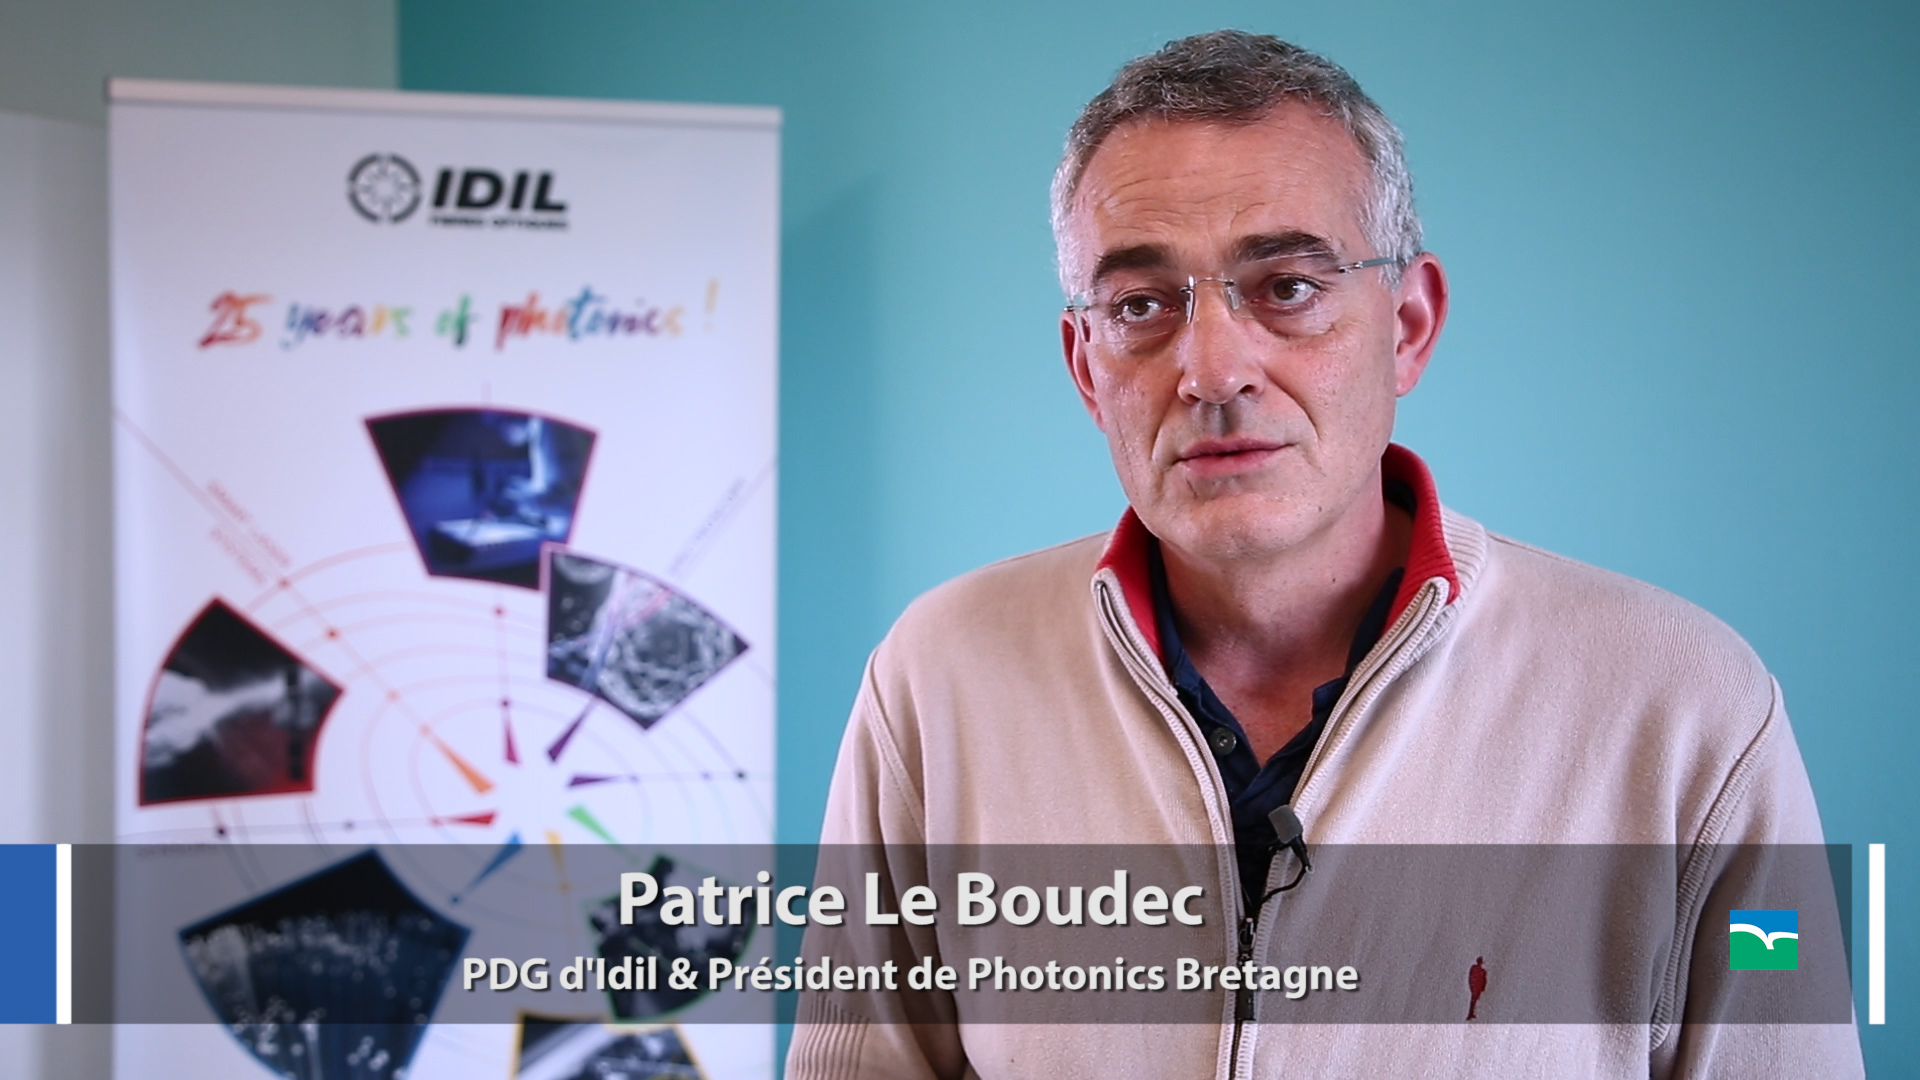 Patrice Le Boudec, PDG d'Idil & président de Photonics Bretagne